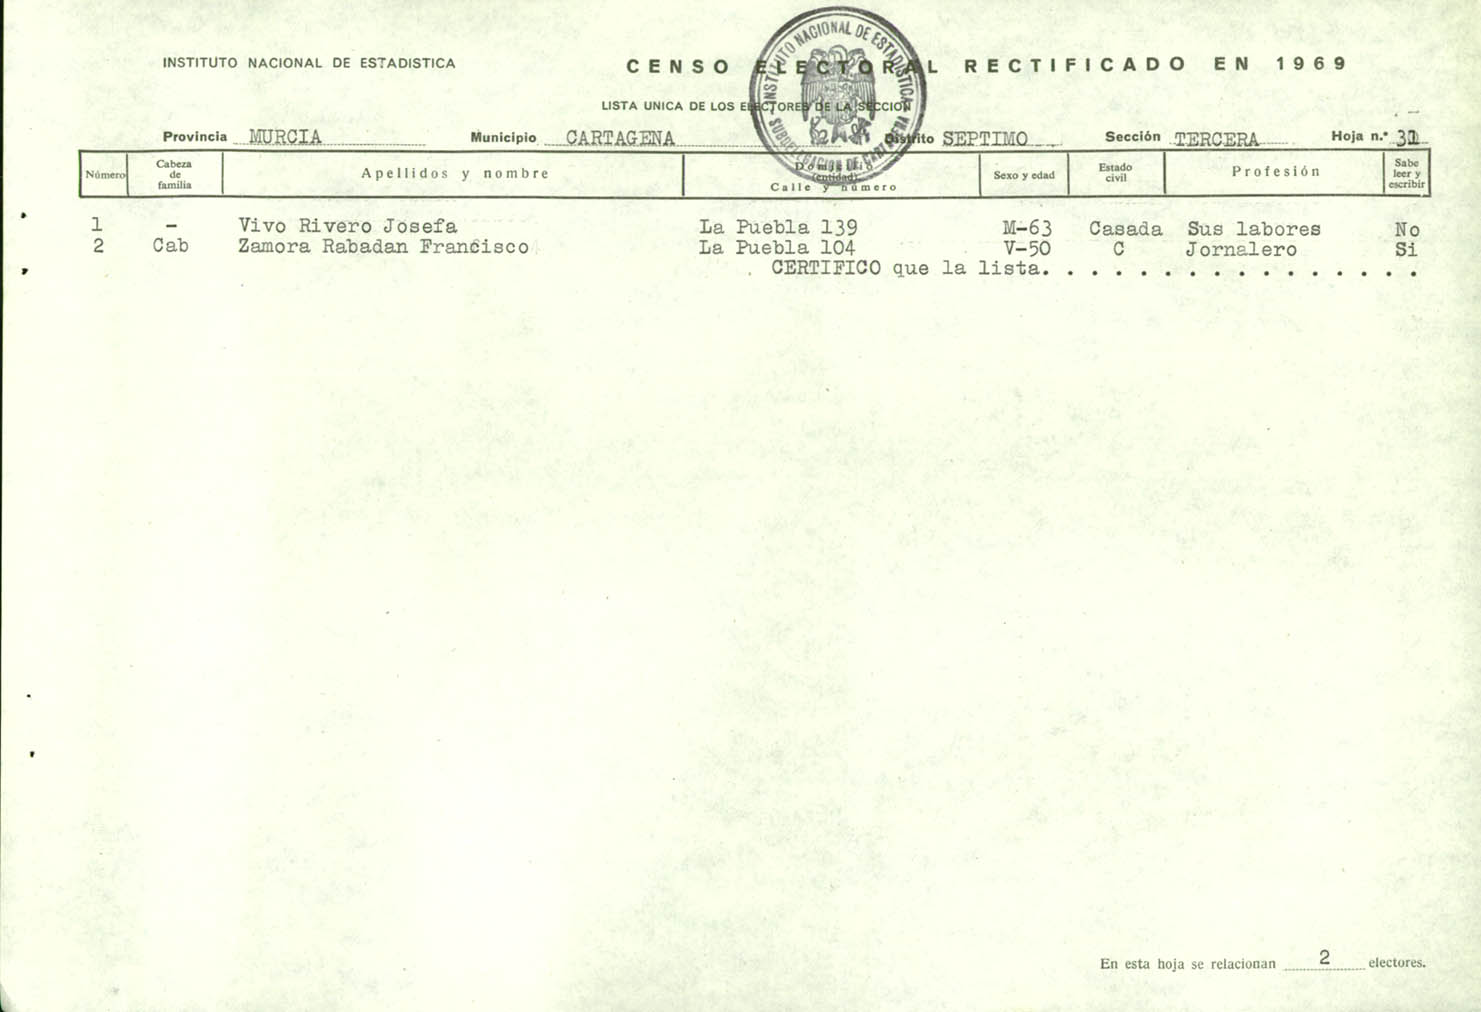 Censo electoral rectificado en 1969: listas definitivas de Cartagena, Distrito 7º, sección 3º.